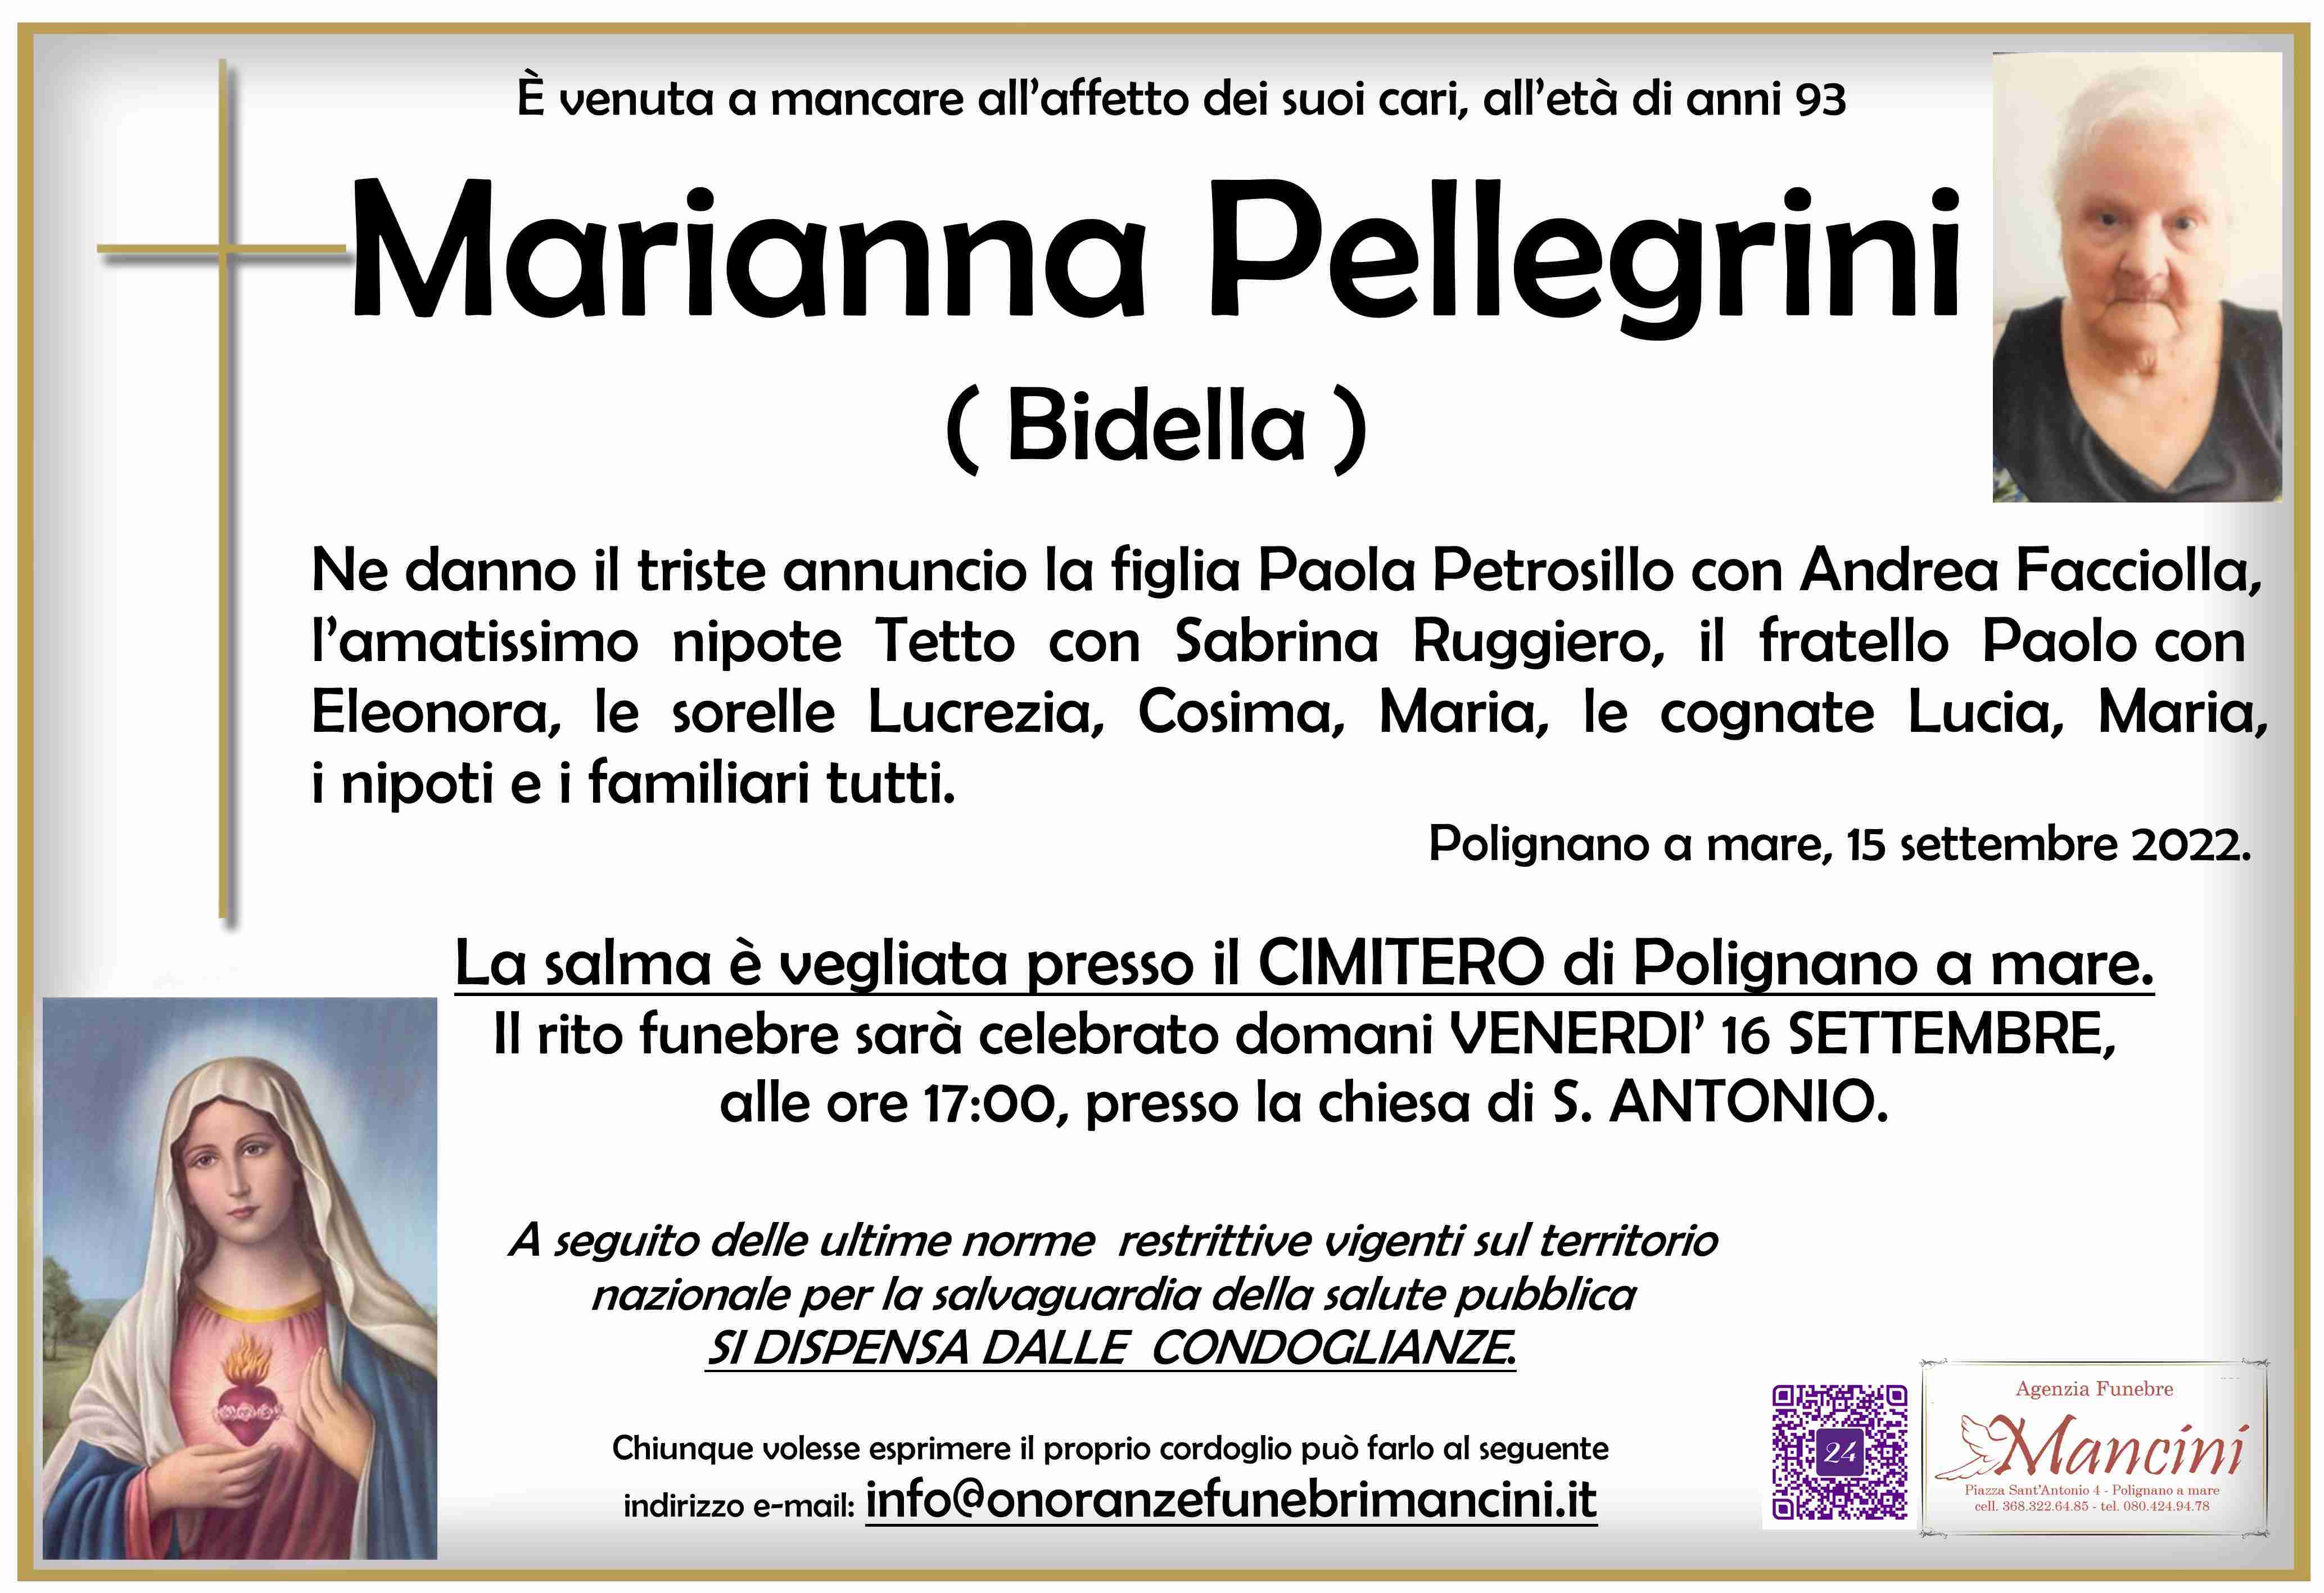 Marianna Pellegrini